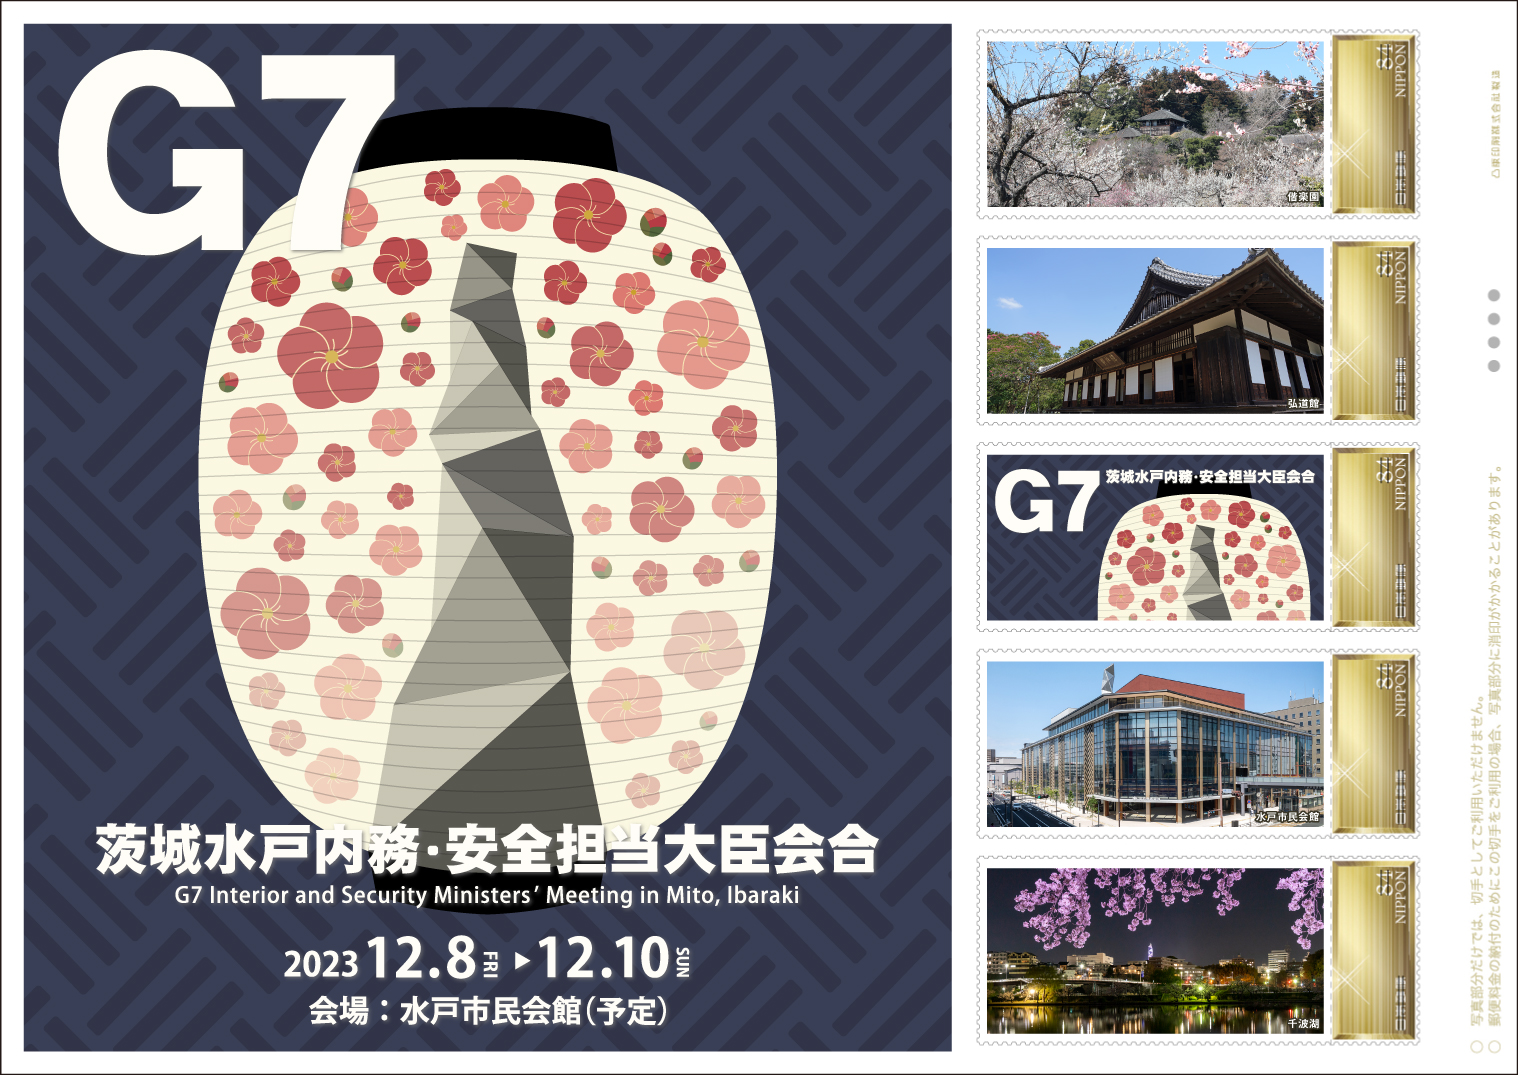 オリジナル フレーム切手「G7茨城水戸内務・安全担当大臣会合開催記念」の販売開始と贈呈式の開催